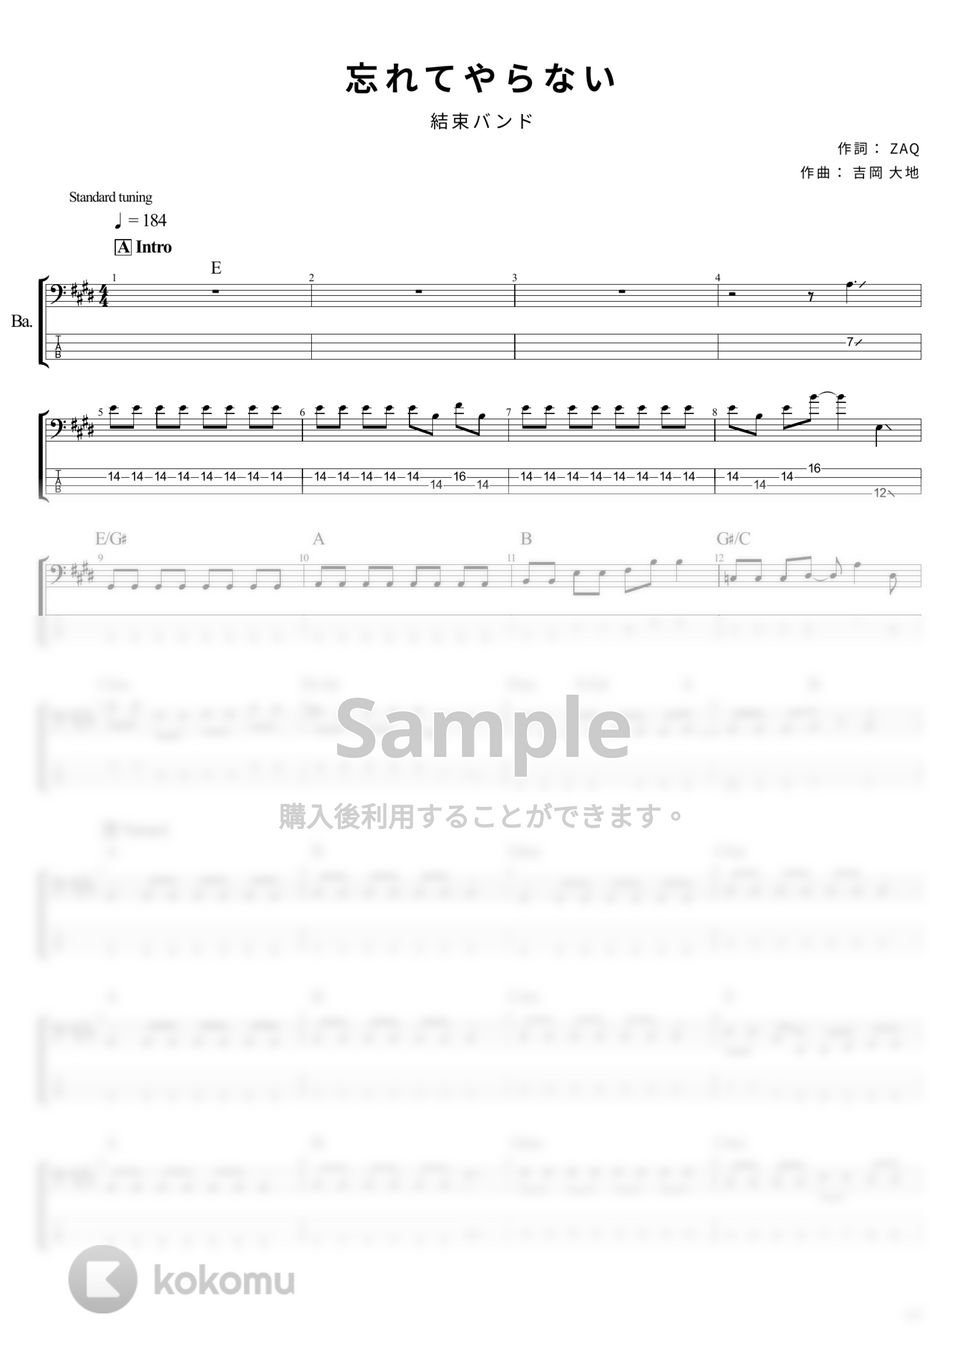 結束バンド - 忘れてやらない (ベース Tab譜 4弦) by T's bass score